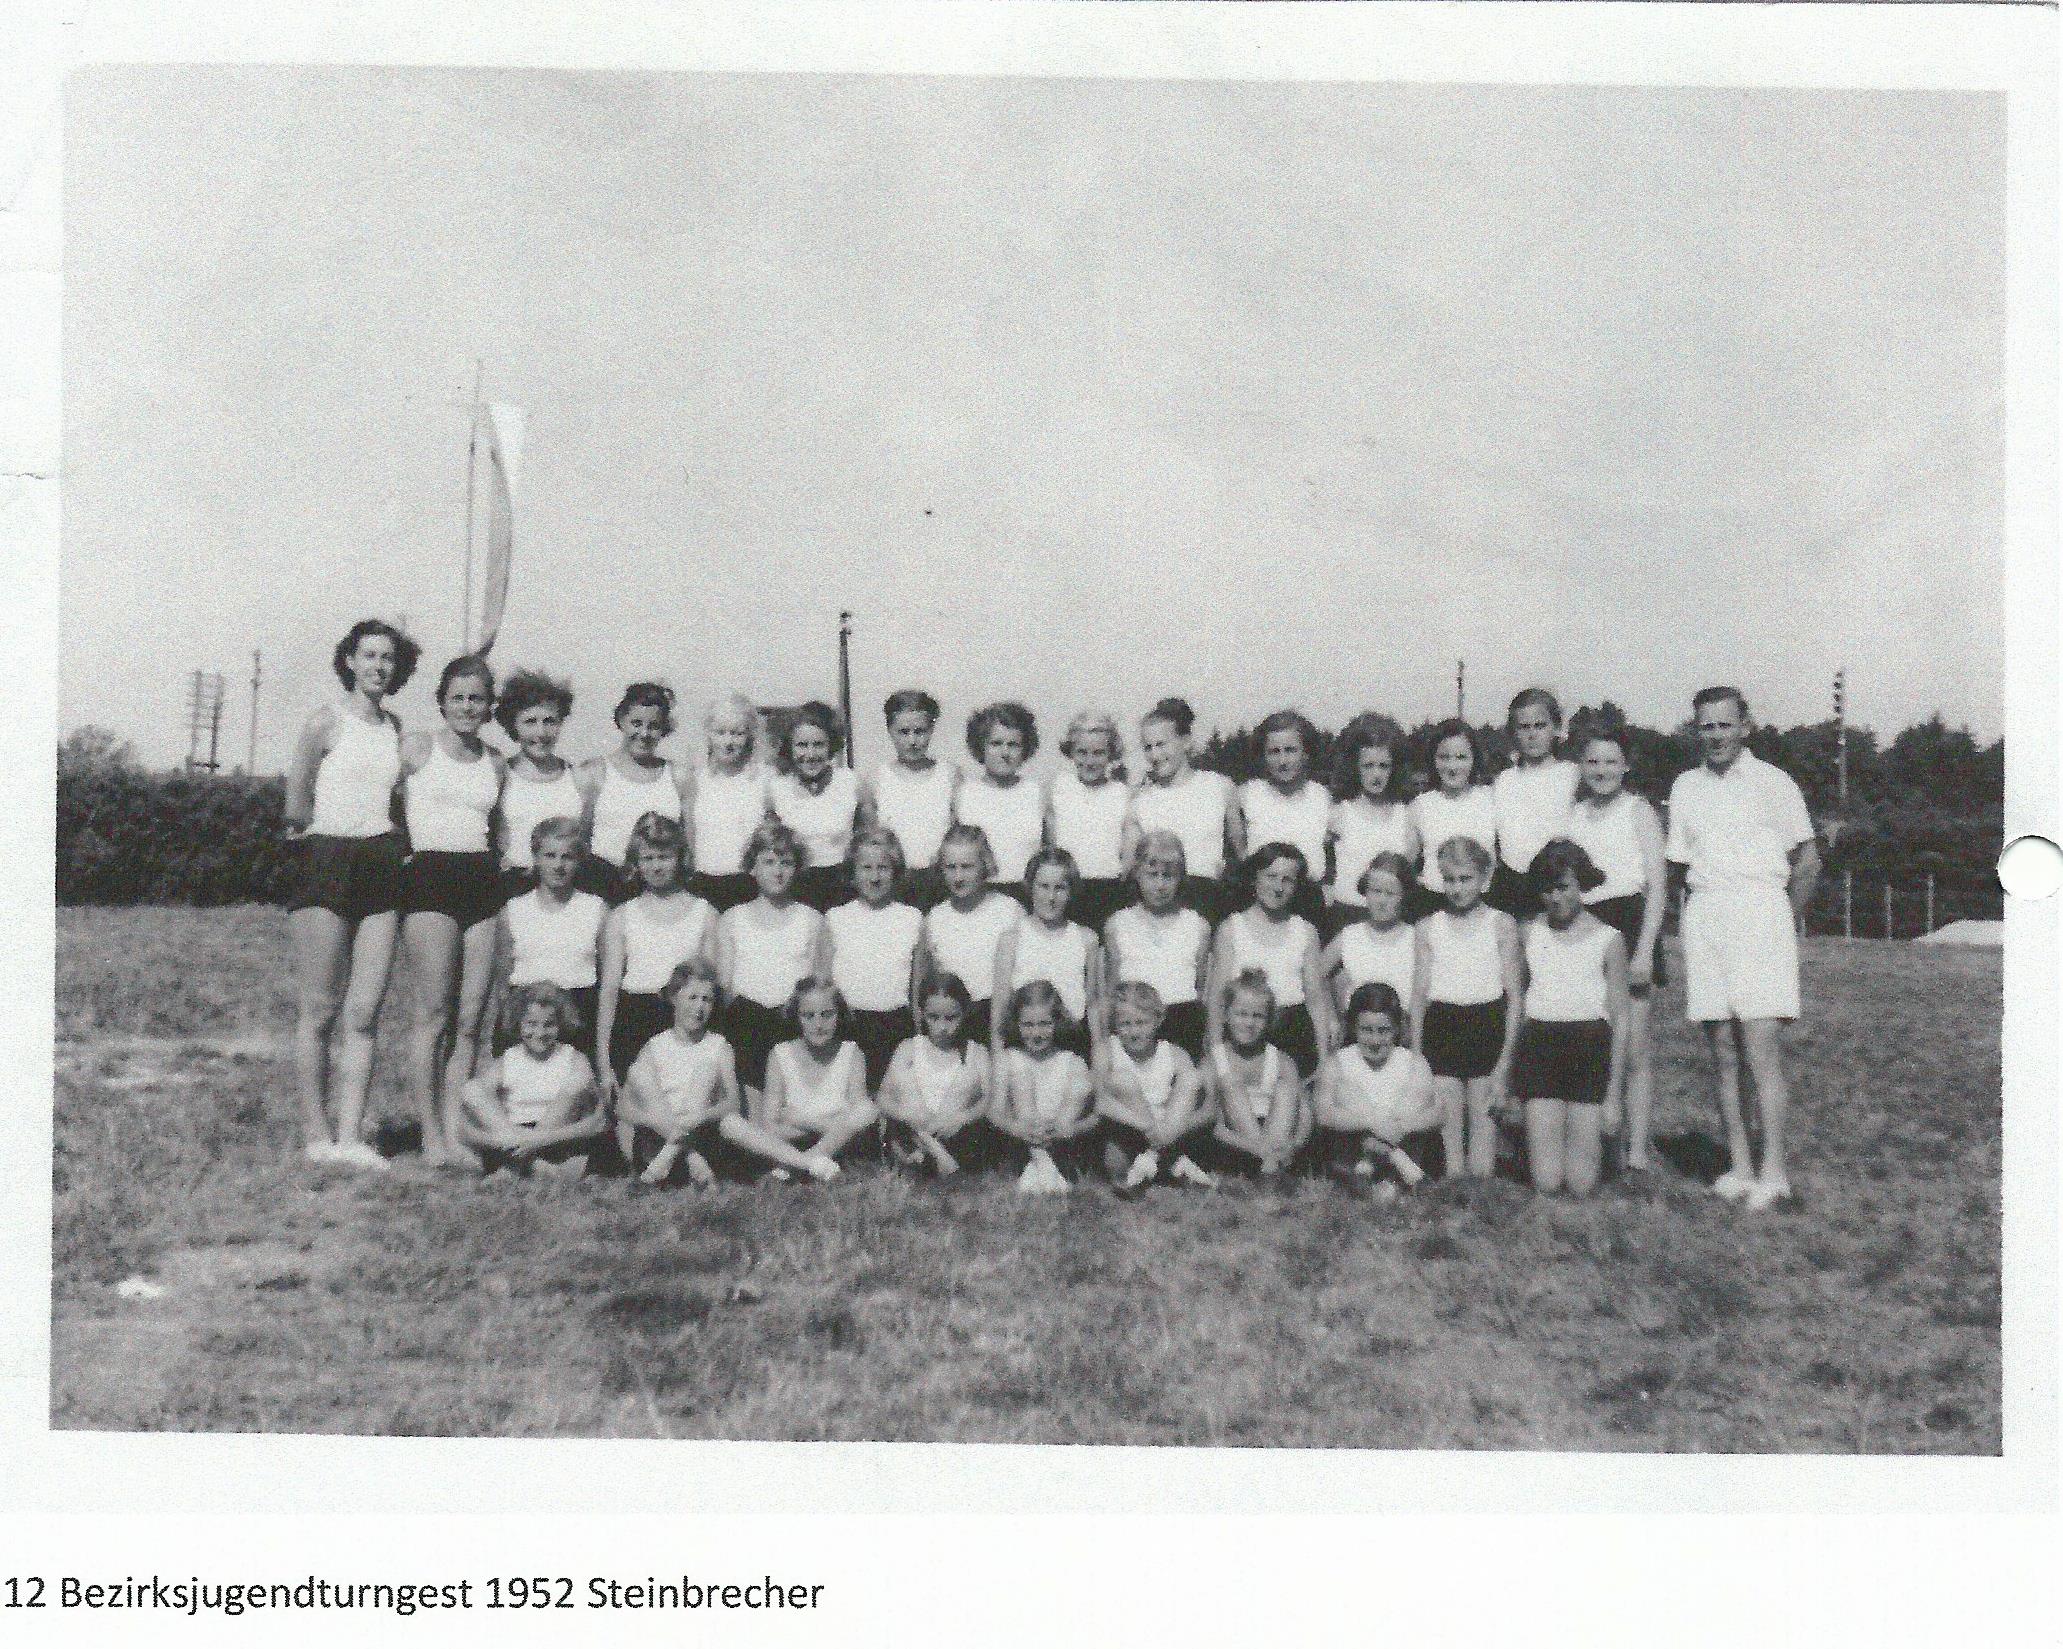 TSV Utting - 1952 Bezirksjugendturnfest, Uttinger Turnriege